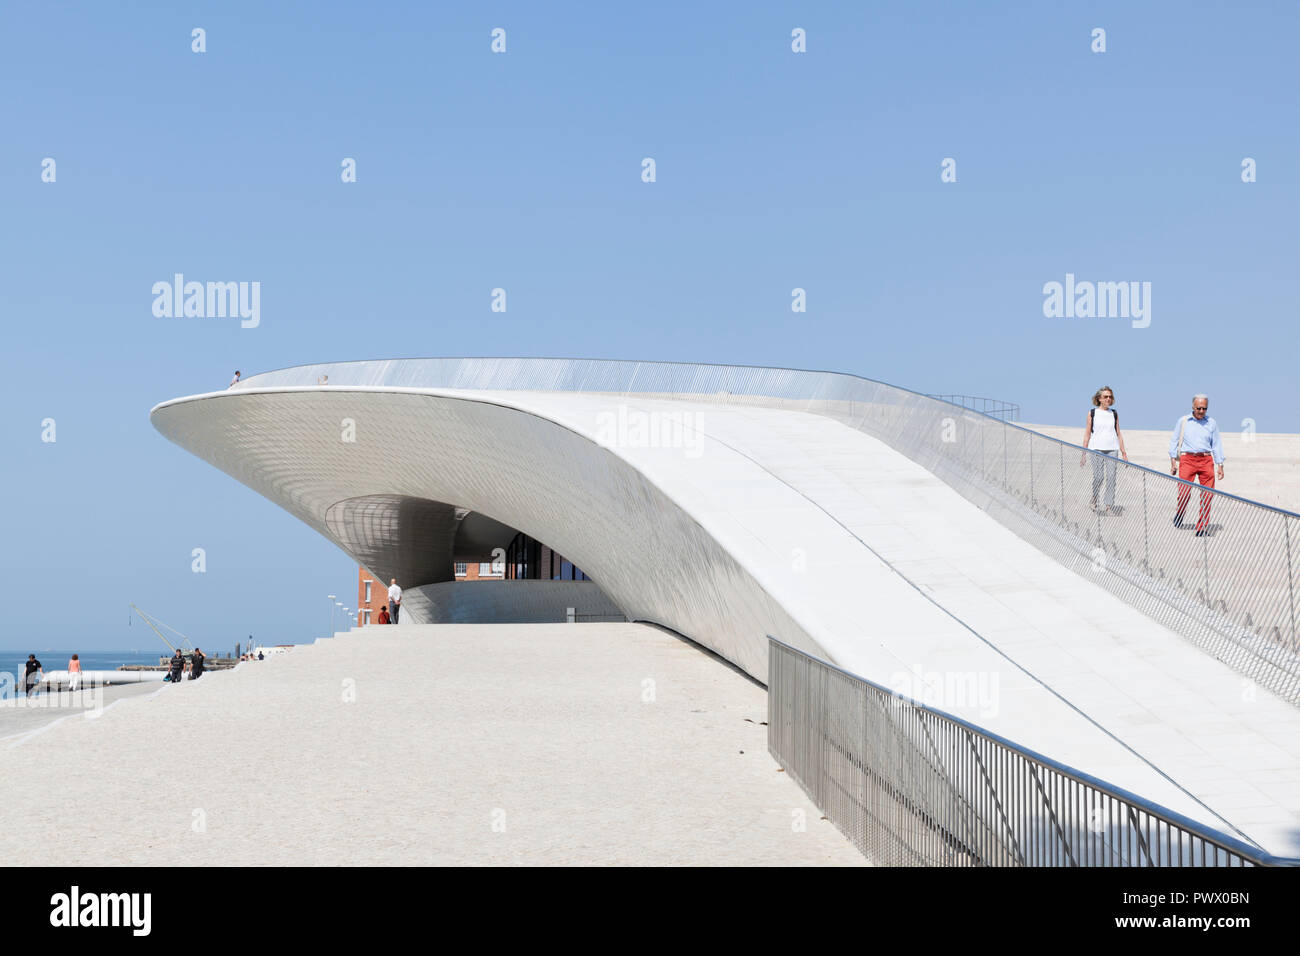 Vue extérieure de la MAAT - Musée d'art, d'architecture et de la Technologie, Lisbonne, Portugal. Vue sur toit en pente qui peuvent être montés jusqu'à la terrasse. Banque D'Images